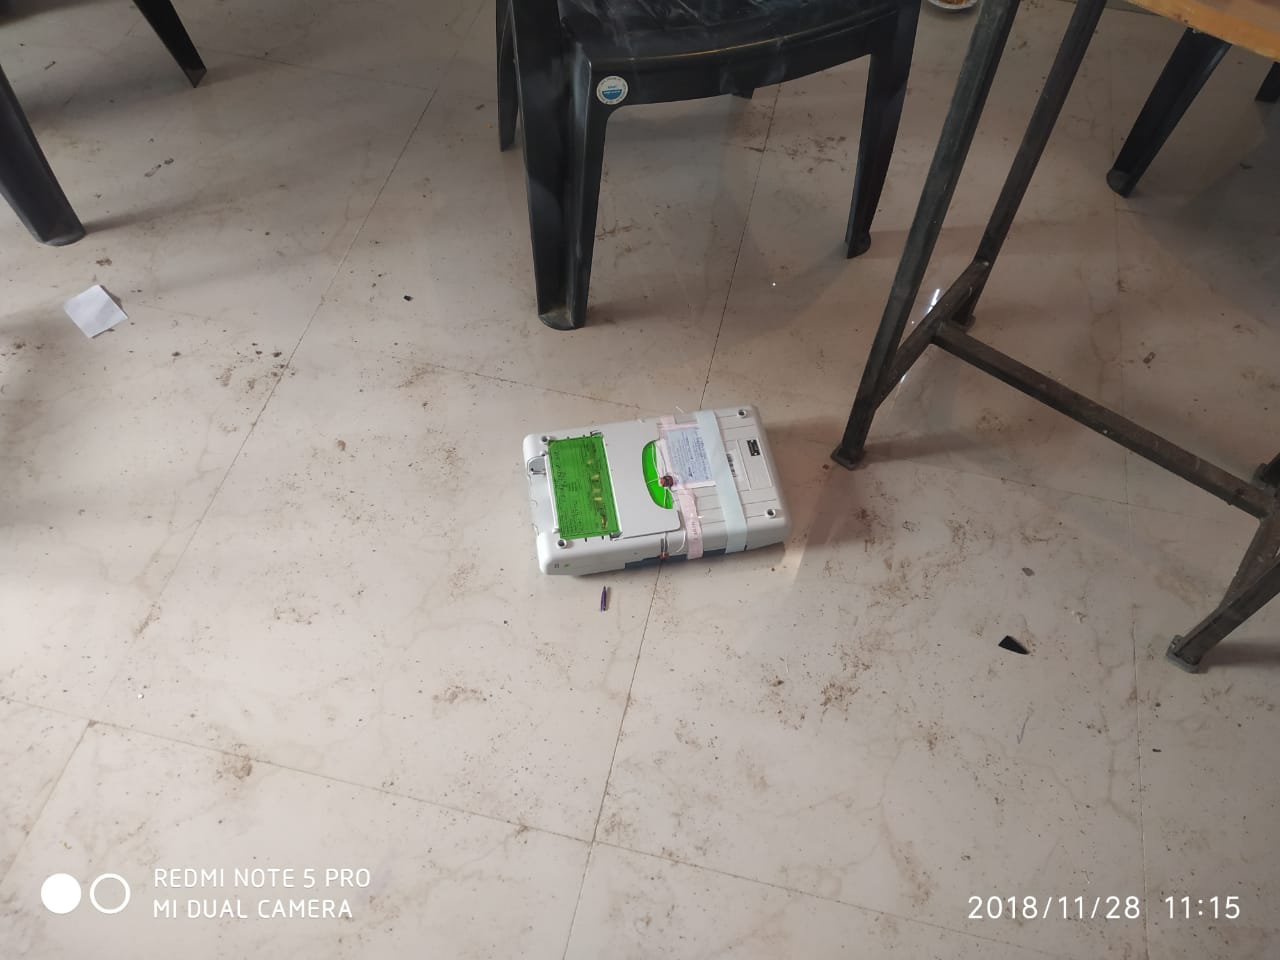 MP Gwalior, Jabalpur elections 2018: कहीं चली गोली, तो कहीं ऐसी हुई वोटिंग